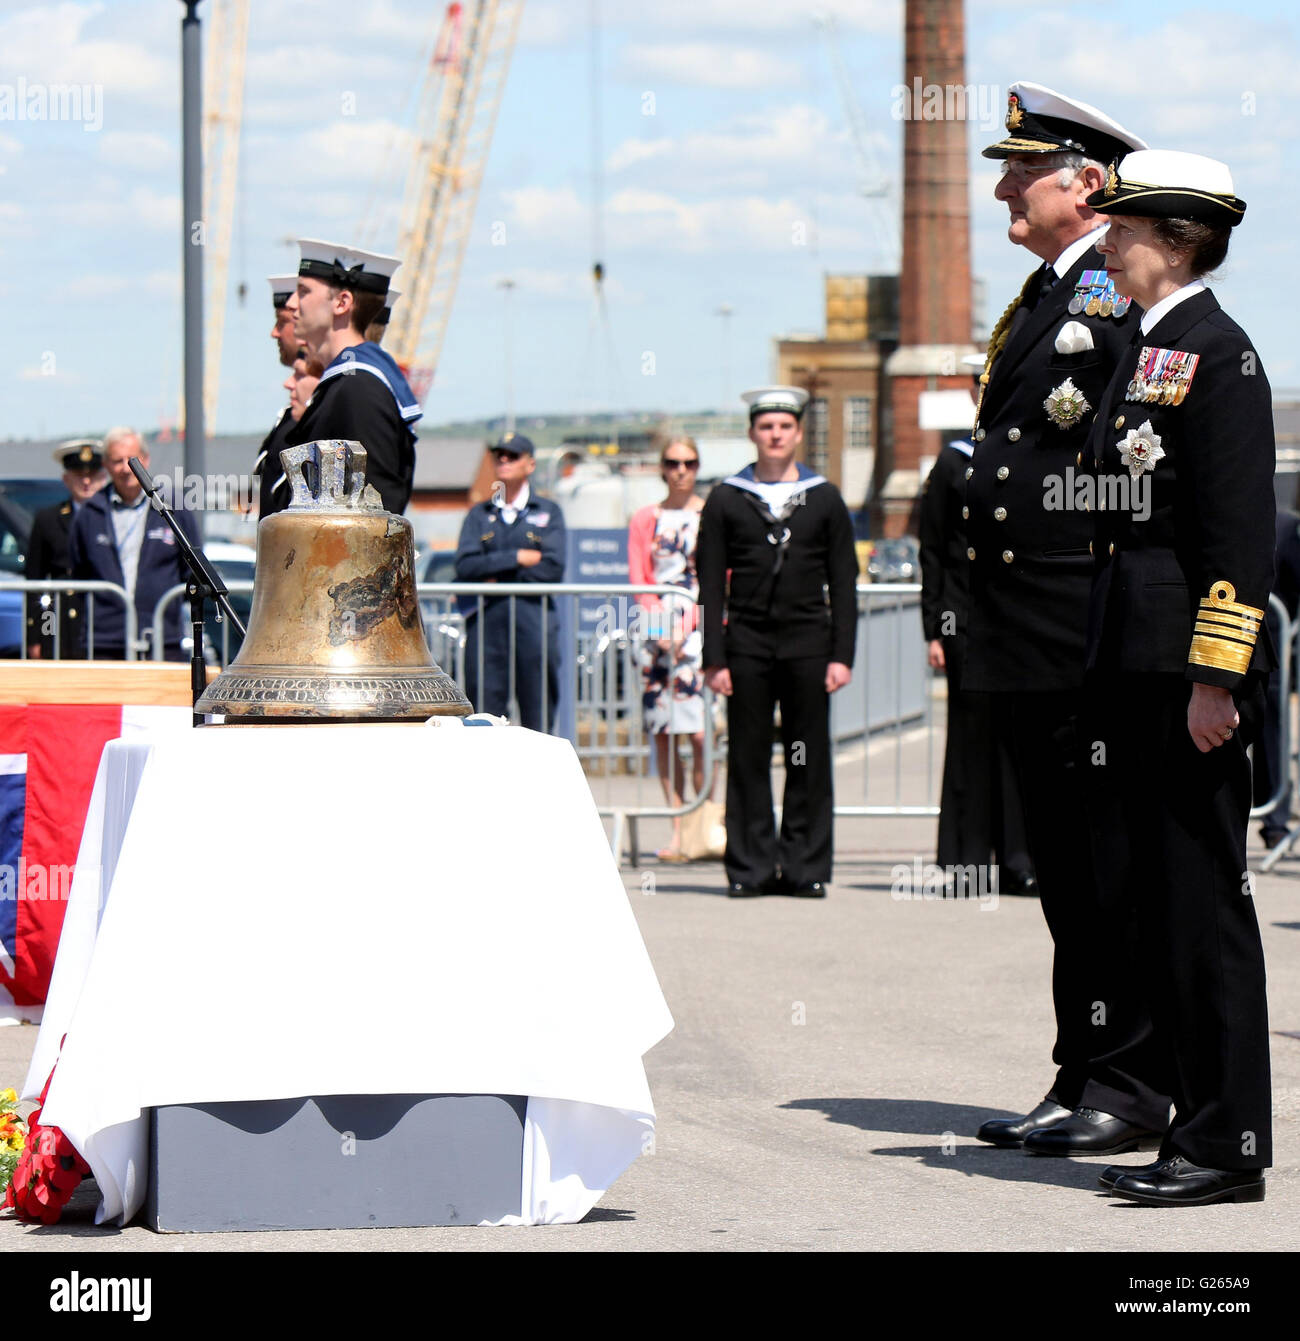 Portsmouth, Hampshire, Reino Unido. El 24 de mayo, 2016. Una campana restaurada desde un WW2 Battlecruiser ha sido revelado por la princesa Ana en el día de hoy. La campana de HMS Hood está ahora en exhibición en el Museo Nacional de la Royal Navy (NMRN) en Portsmouth Historic Dockyard después de ser recuperado de los fondos marinos el año pasado. HMS Hood fue alcanzado por un proyectil de acorazado, Bismarck, en 1941 y hoy se conmemora el 75º aniversario de ese día. La Princesa Ana pasó luego a inaugurar oficialmente la nueva feria NMRN contando la historia de la Batalla de Jutlandia Crédito: uknip/Alamy Live News Foto de stock